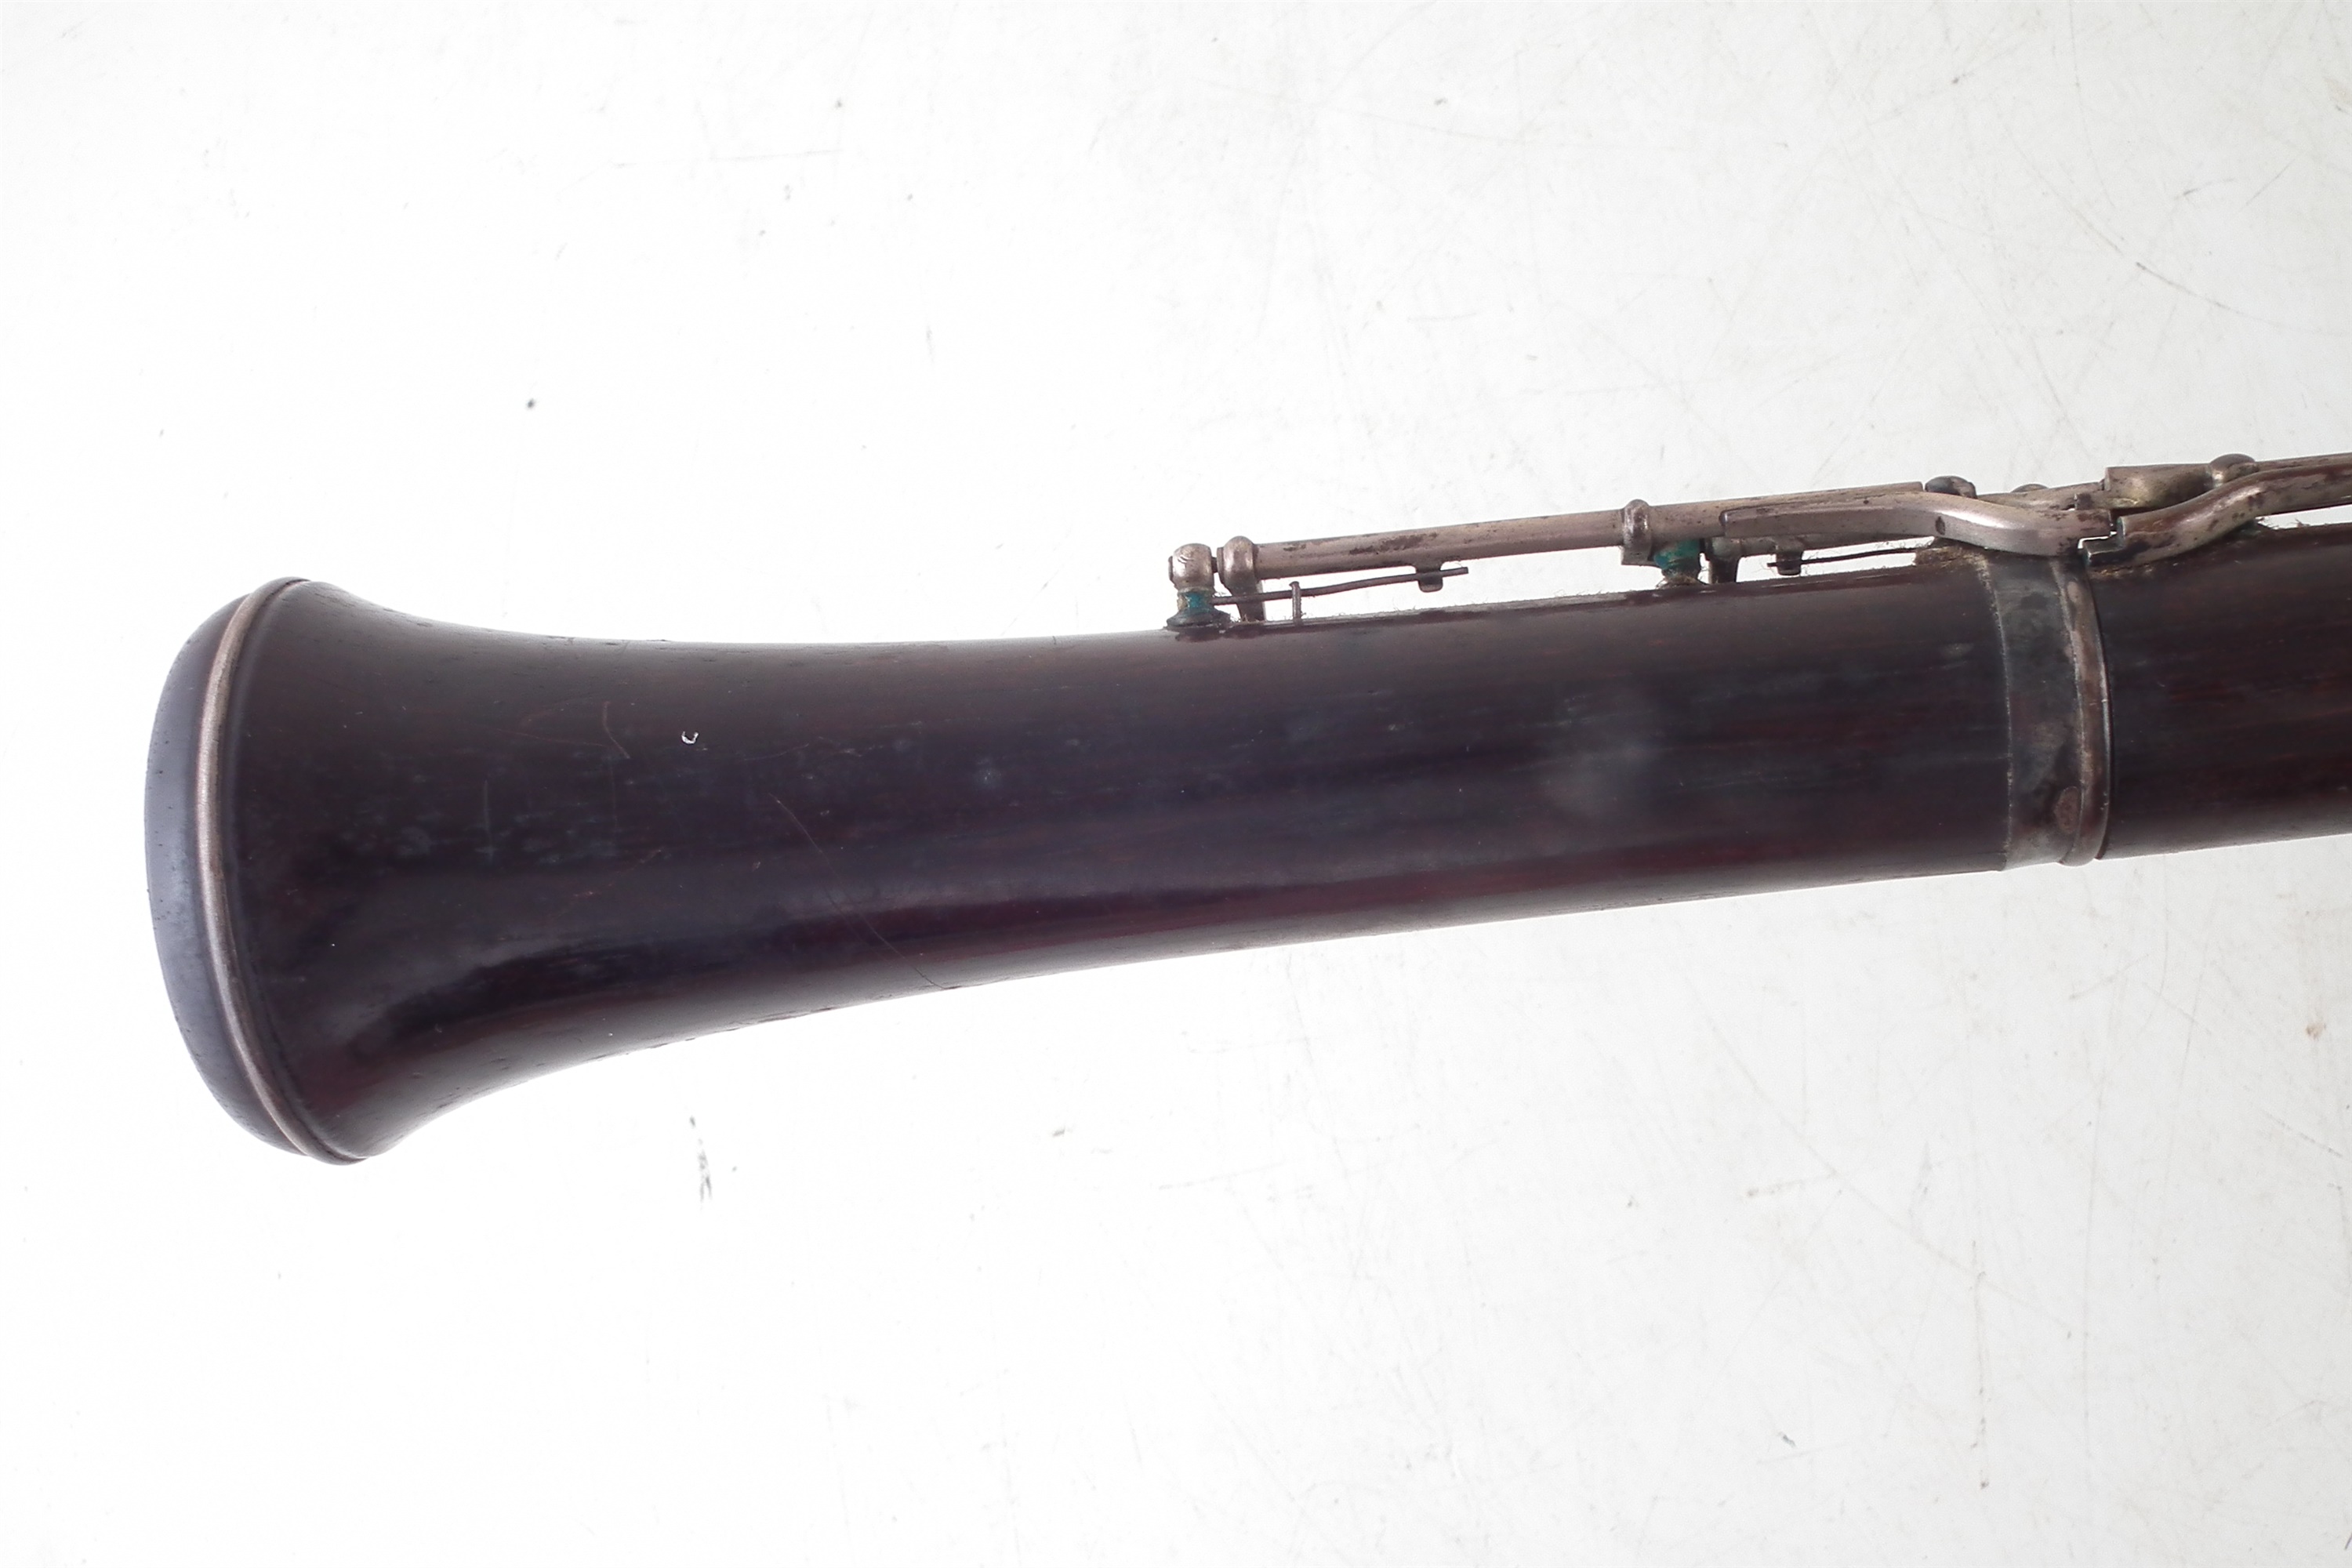 Brevete Paris cocus wood oboe - Image 9 of 9